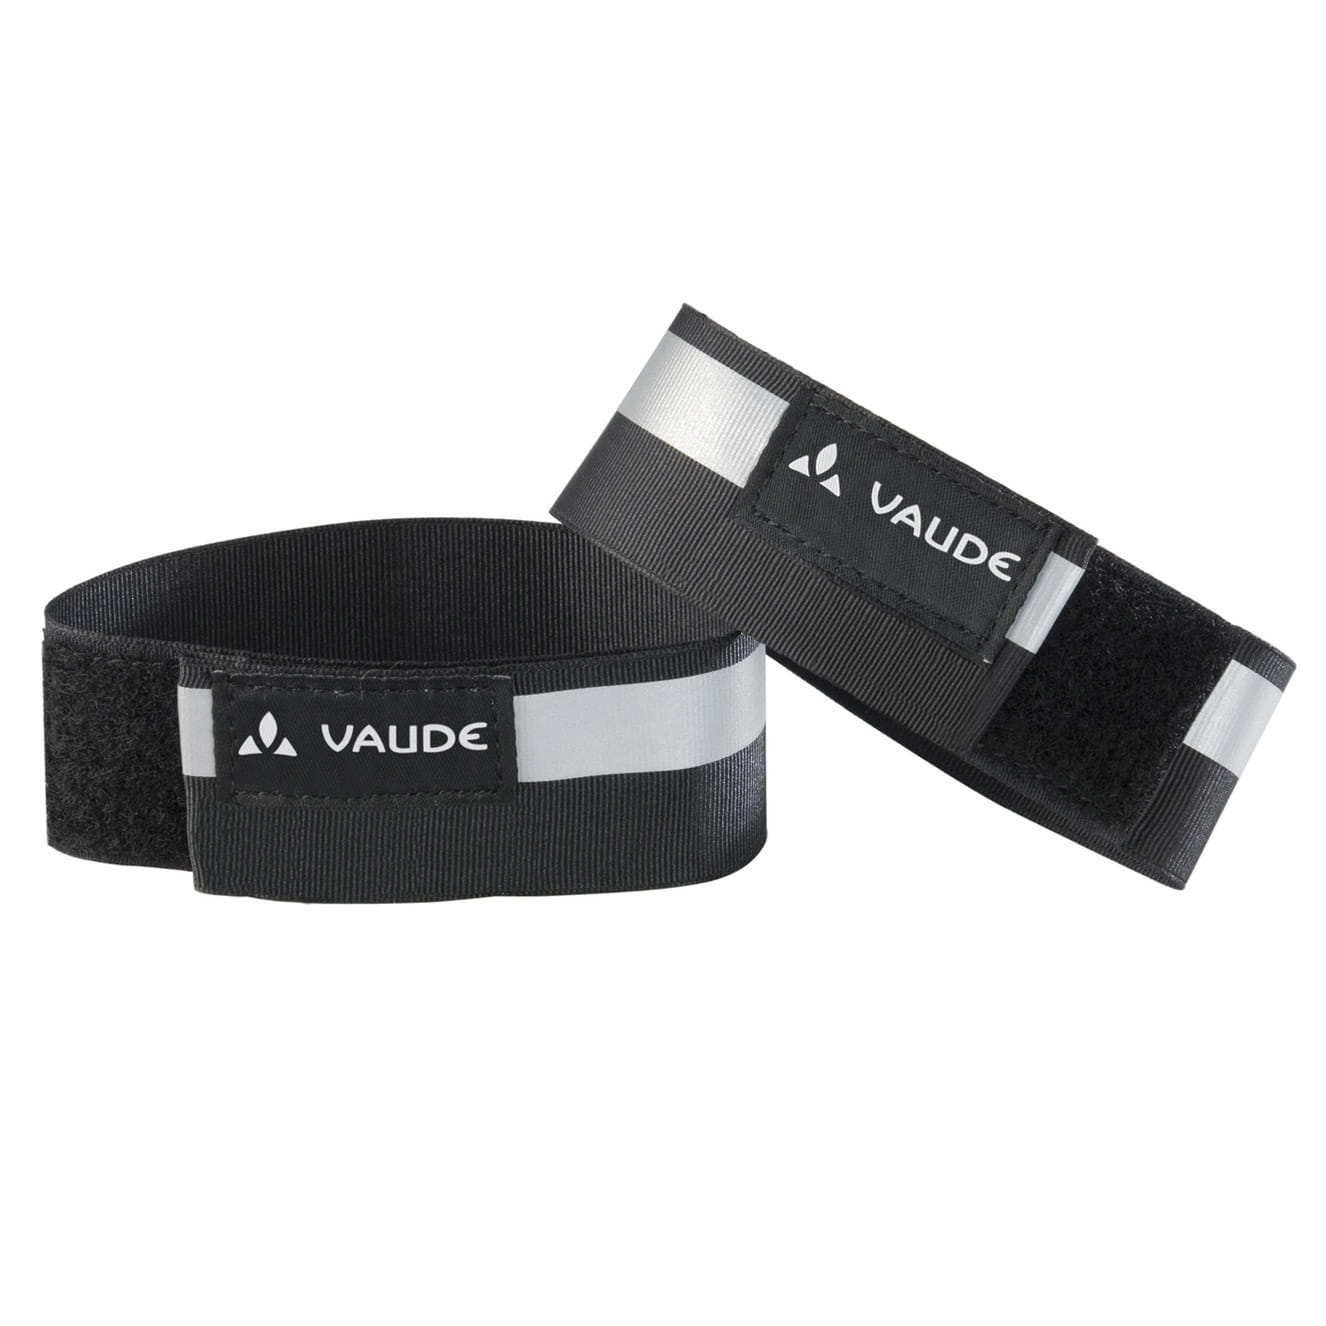 VAUDE Reflective cuffs Klett-Reflexband Hosenband Schwarz (Paar)